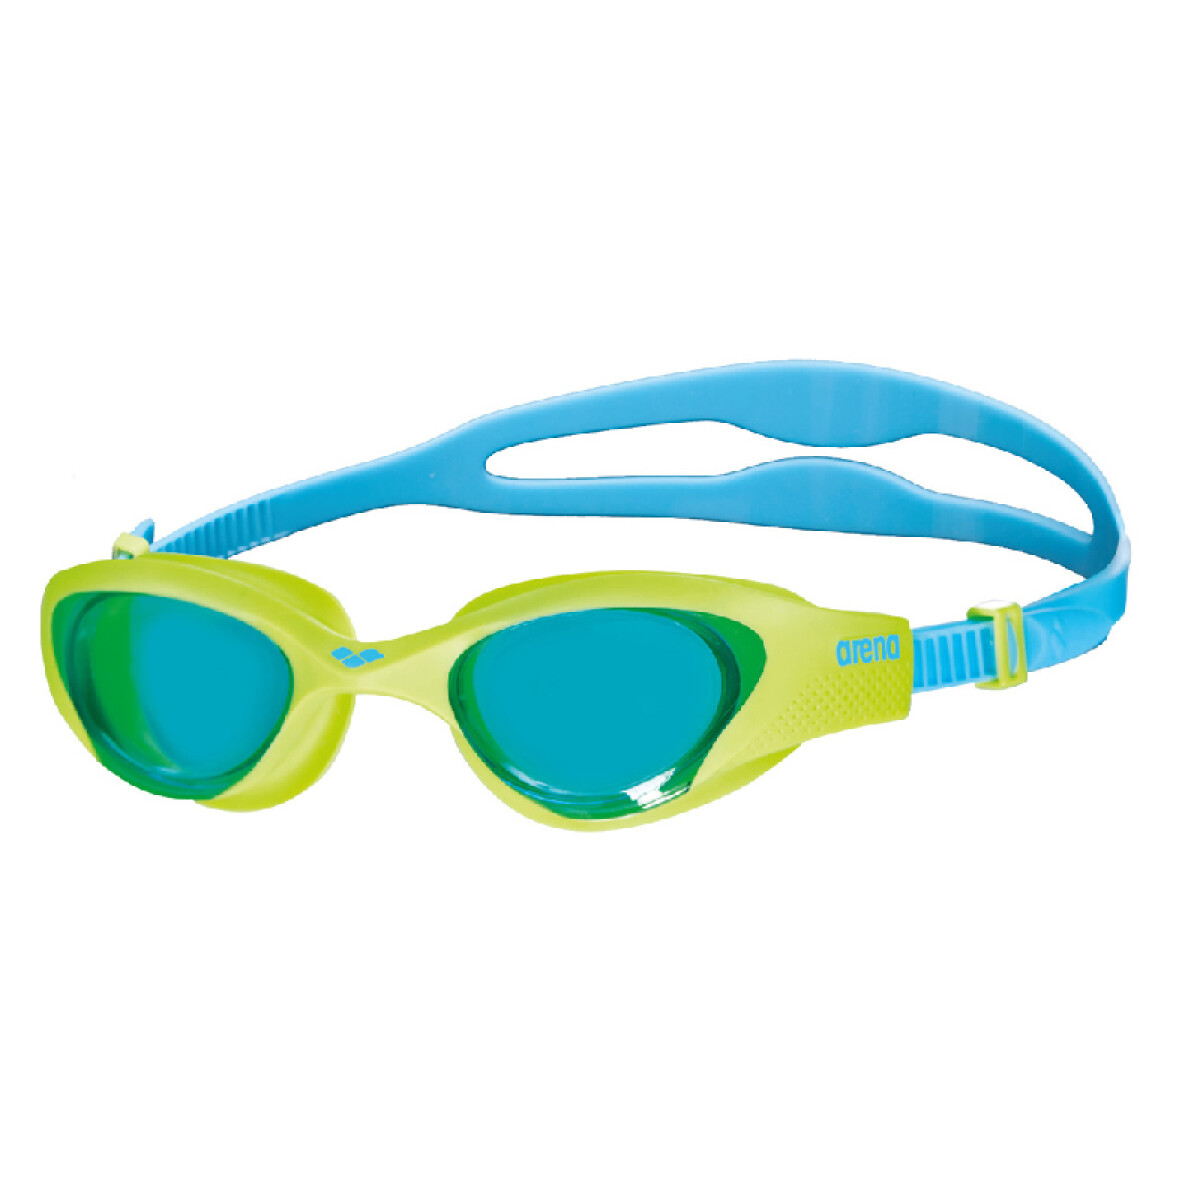 Lentes De Natacion Para Niños Arena The One Junior Goggles (6 a 12 años) - Azul y Verde 